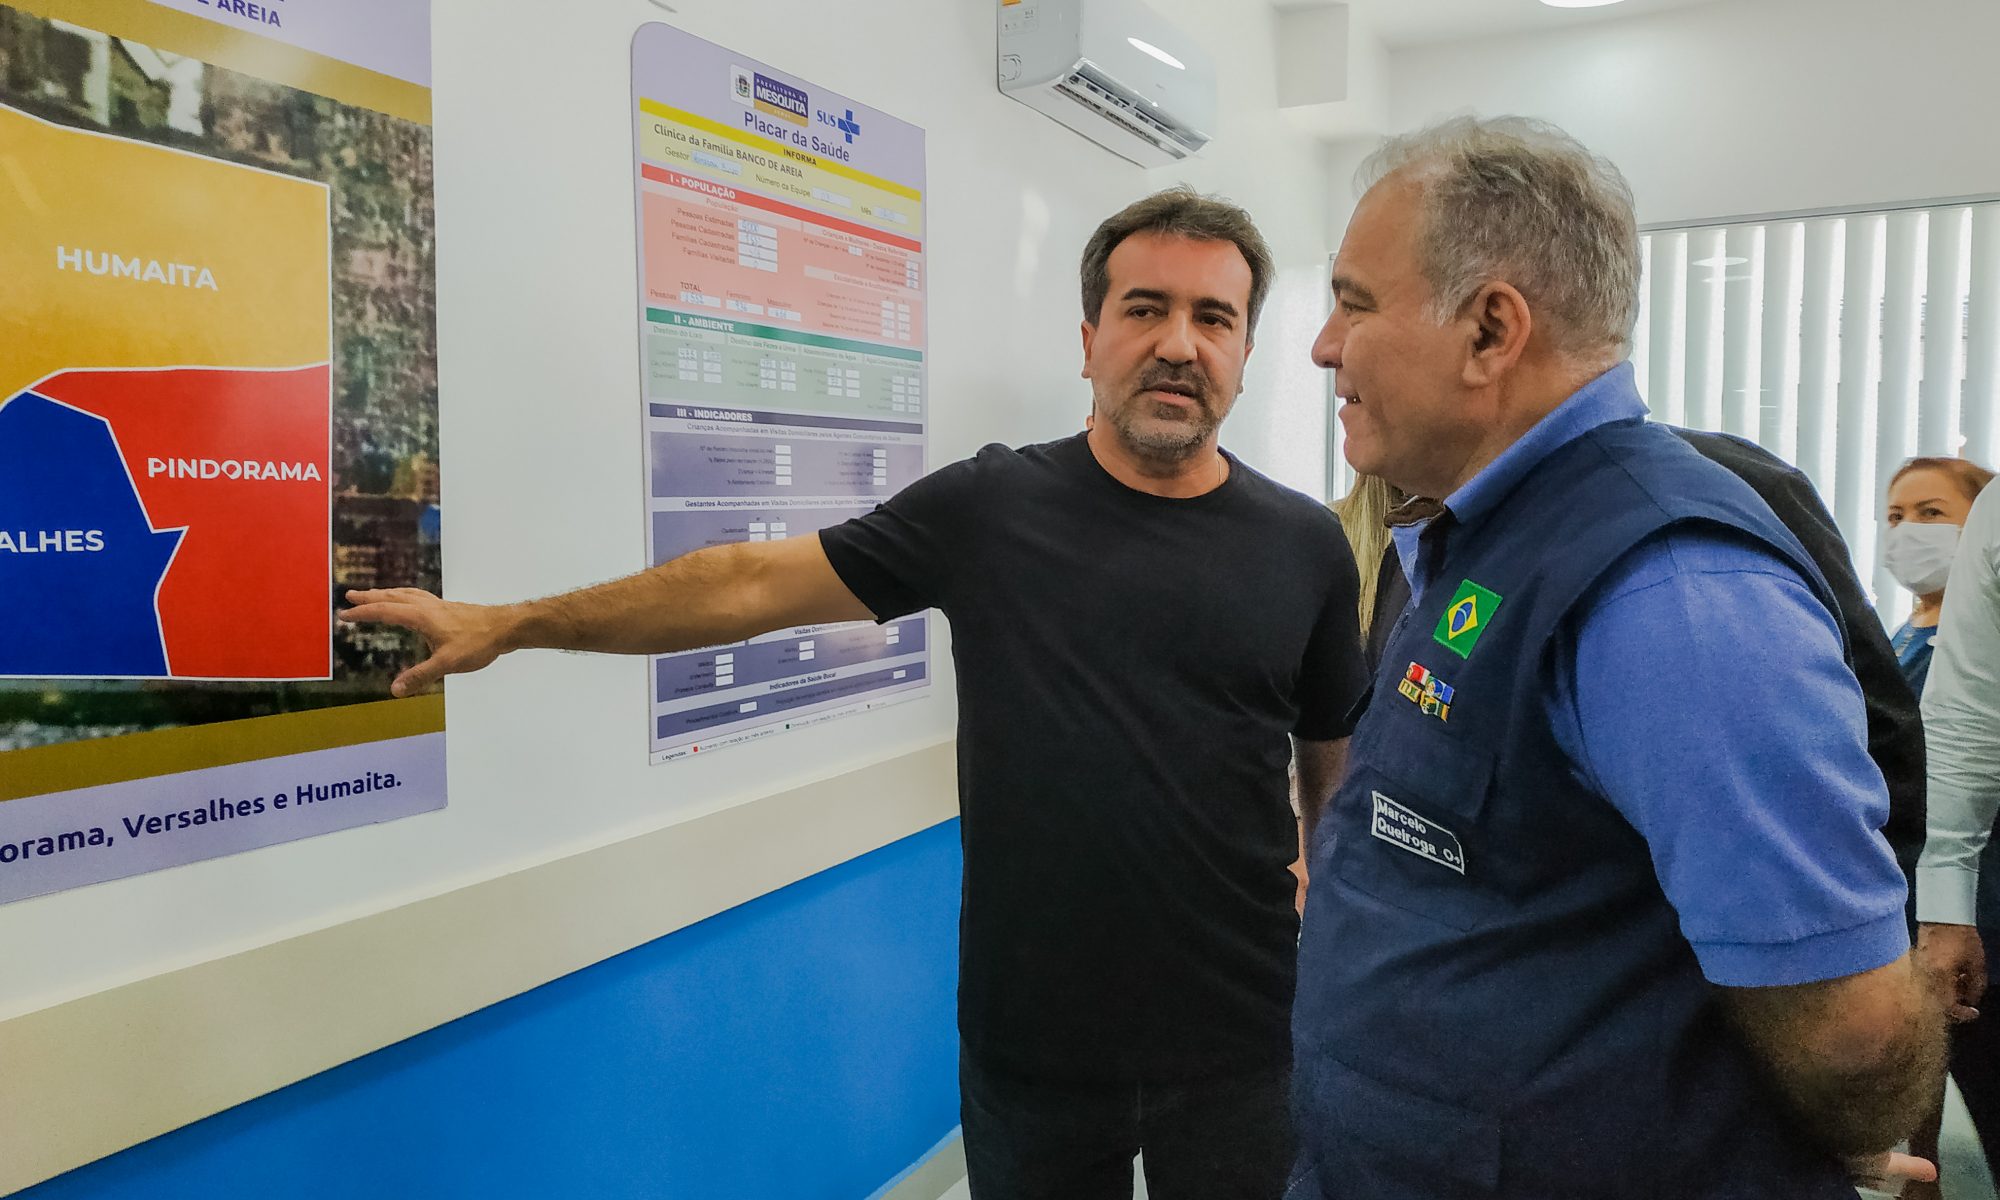 Mesquita recebeu a visita do ministro de Saúde, Marcelo Queiroga no dia 17. O encontro foi motivado pelo bom desempenho na Atenção Básica.